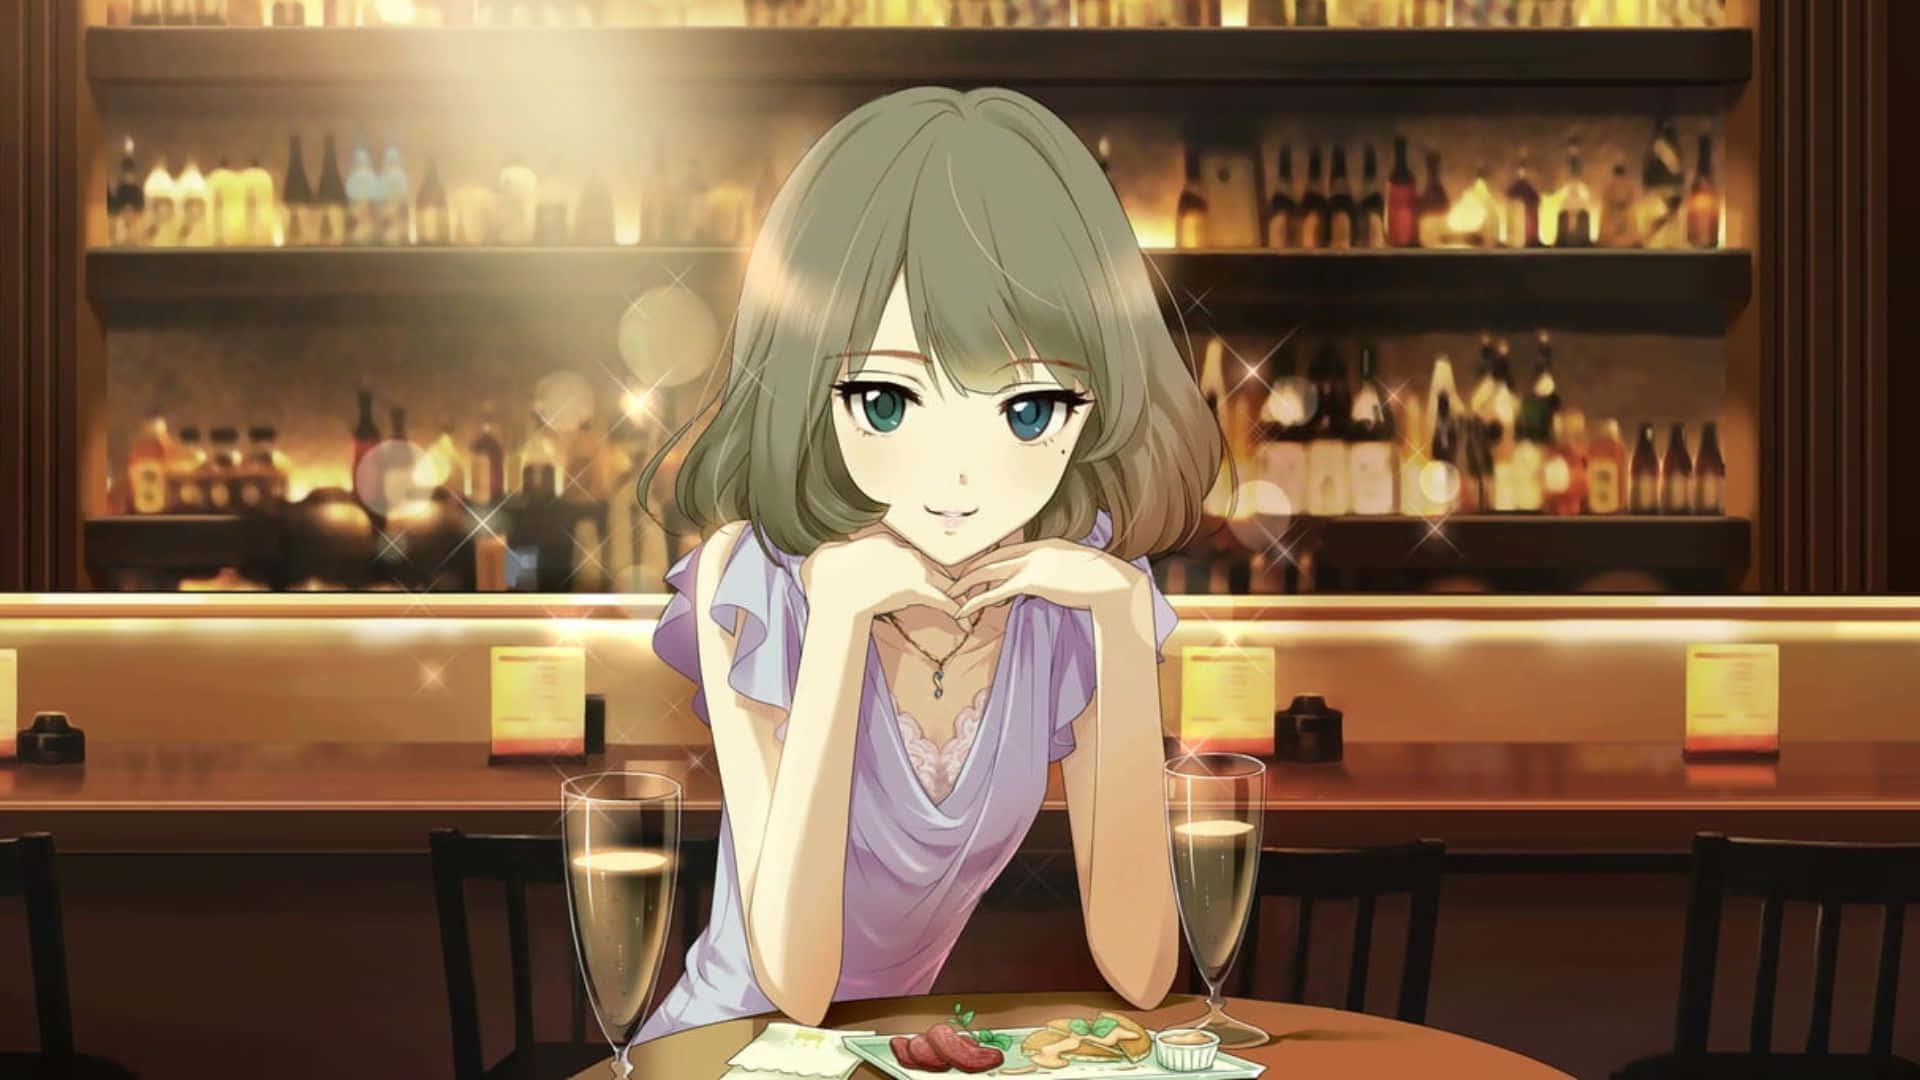 Download Anime Cafe Shop Background  Wallpaperscom